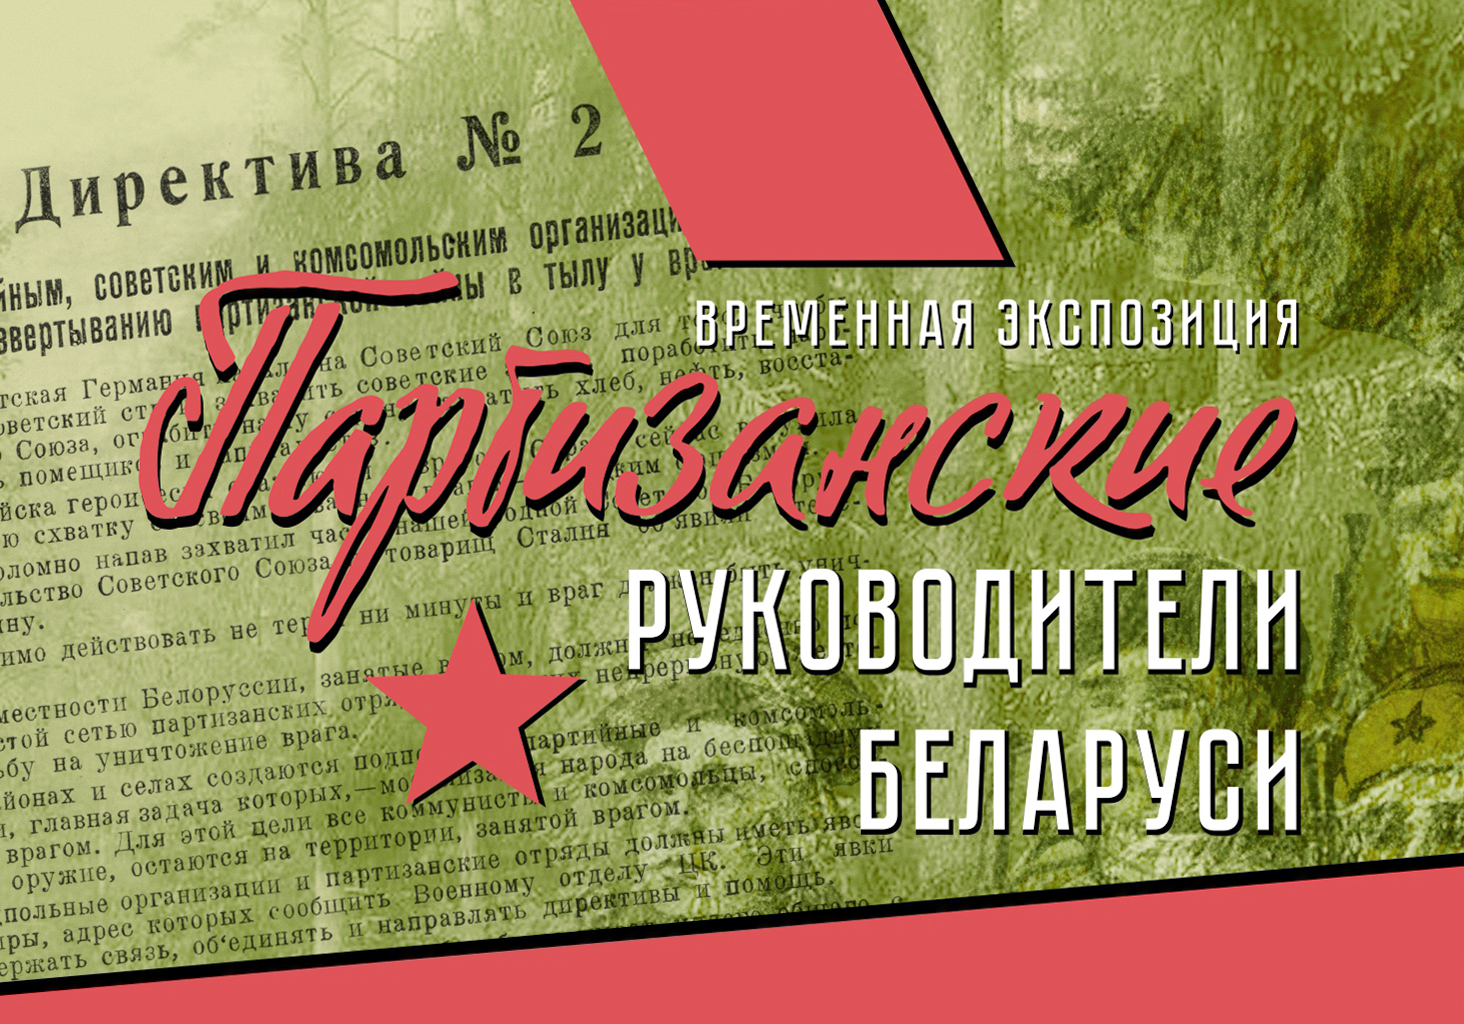 5 августа состоится открытие временной экспозиции "Партизанские руководители Беларуси"